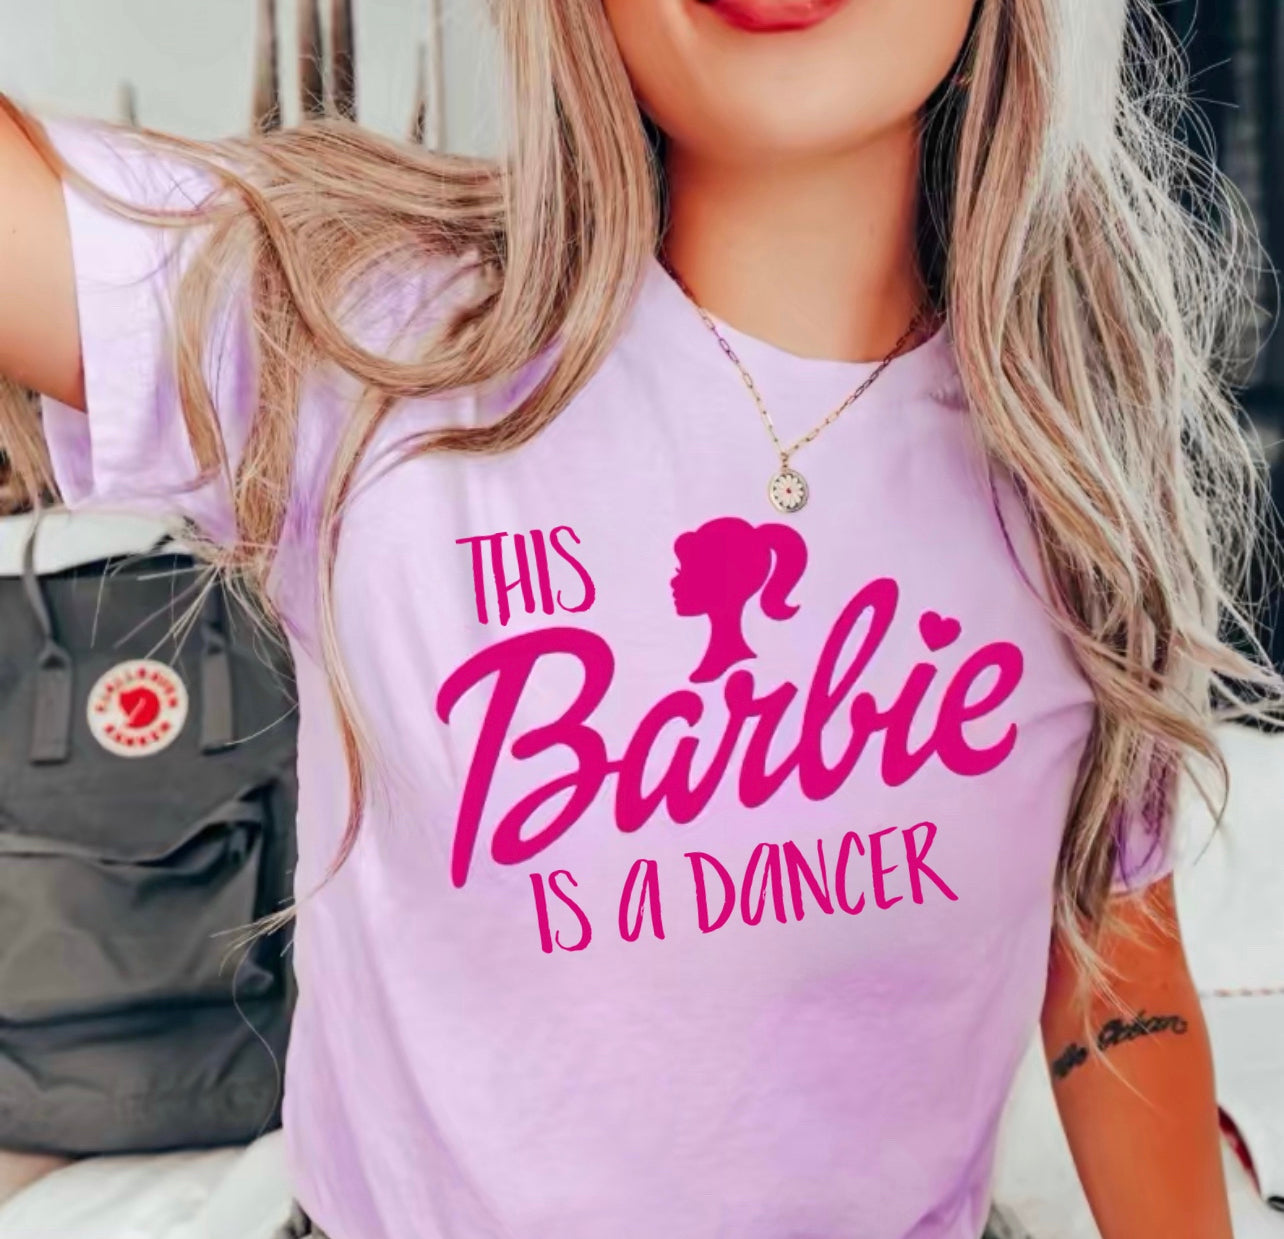 Dancer barbie shirt| Barbie Dancer shirt | Dance shirt| Gift for Dancer| Dance tee| Dancer shirt